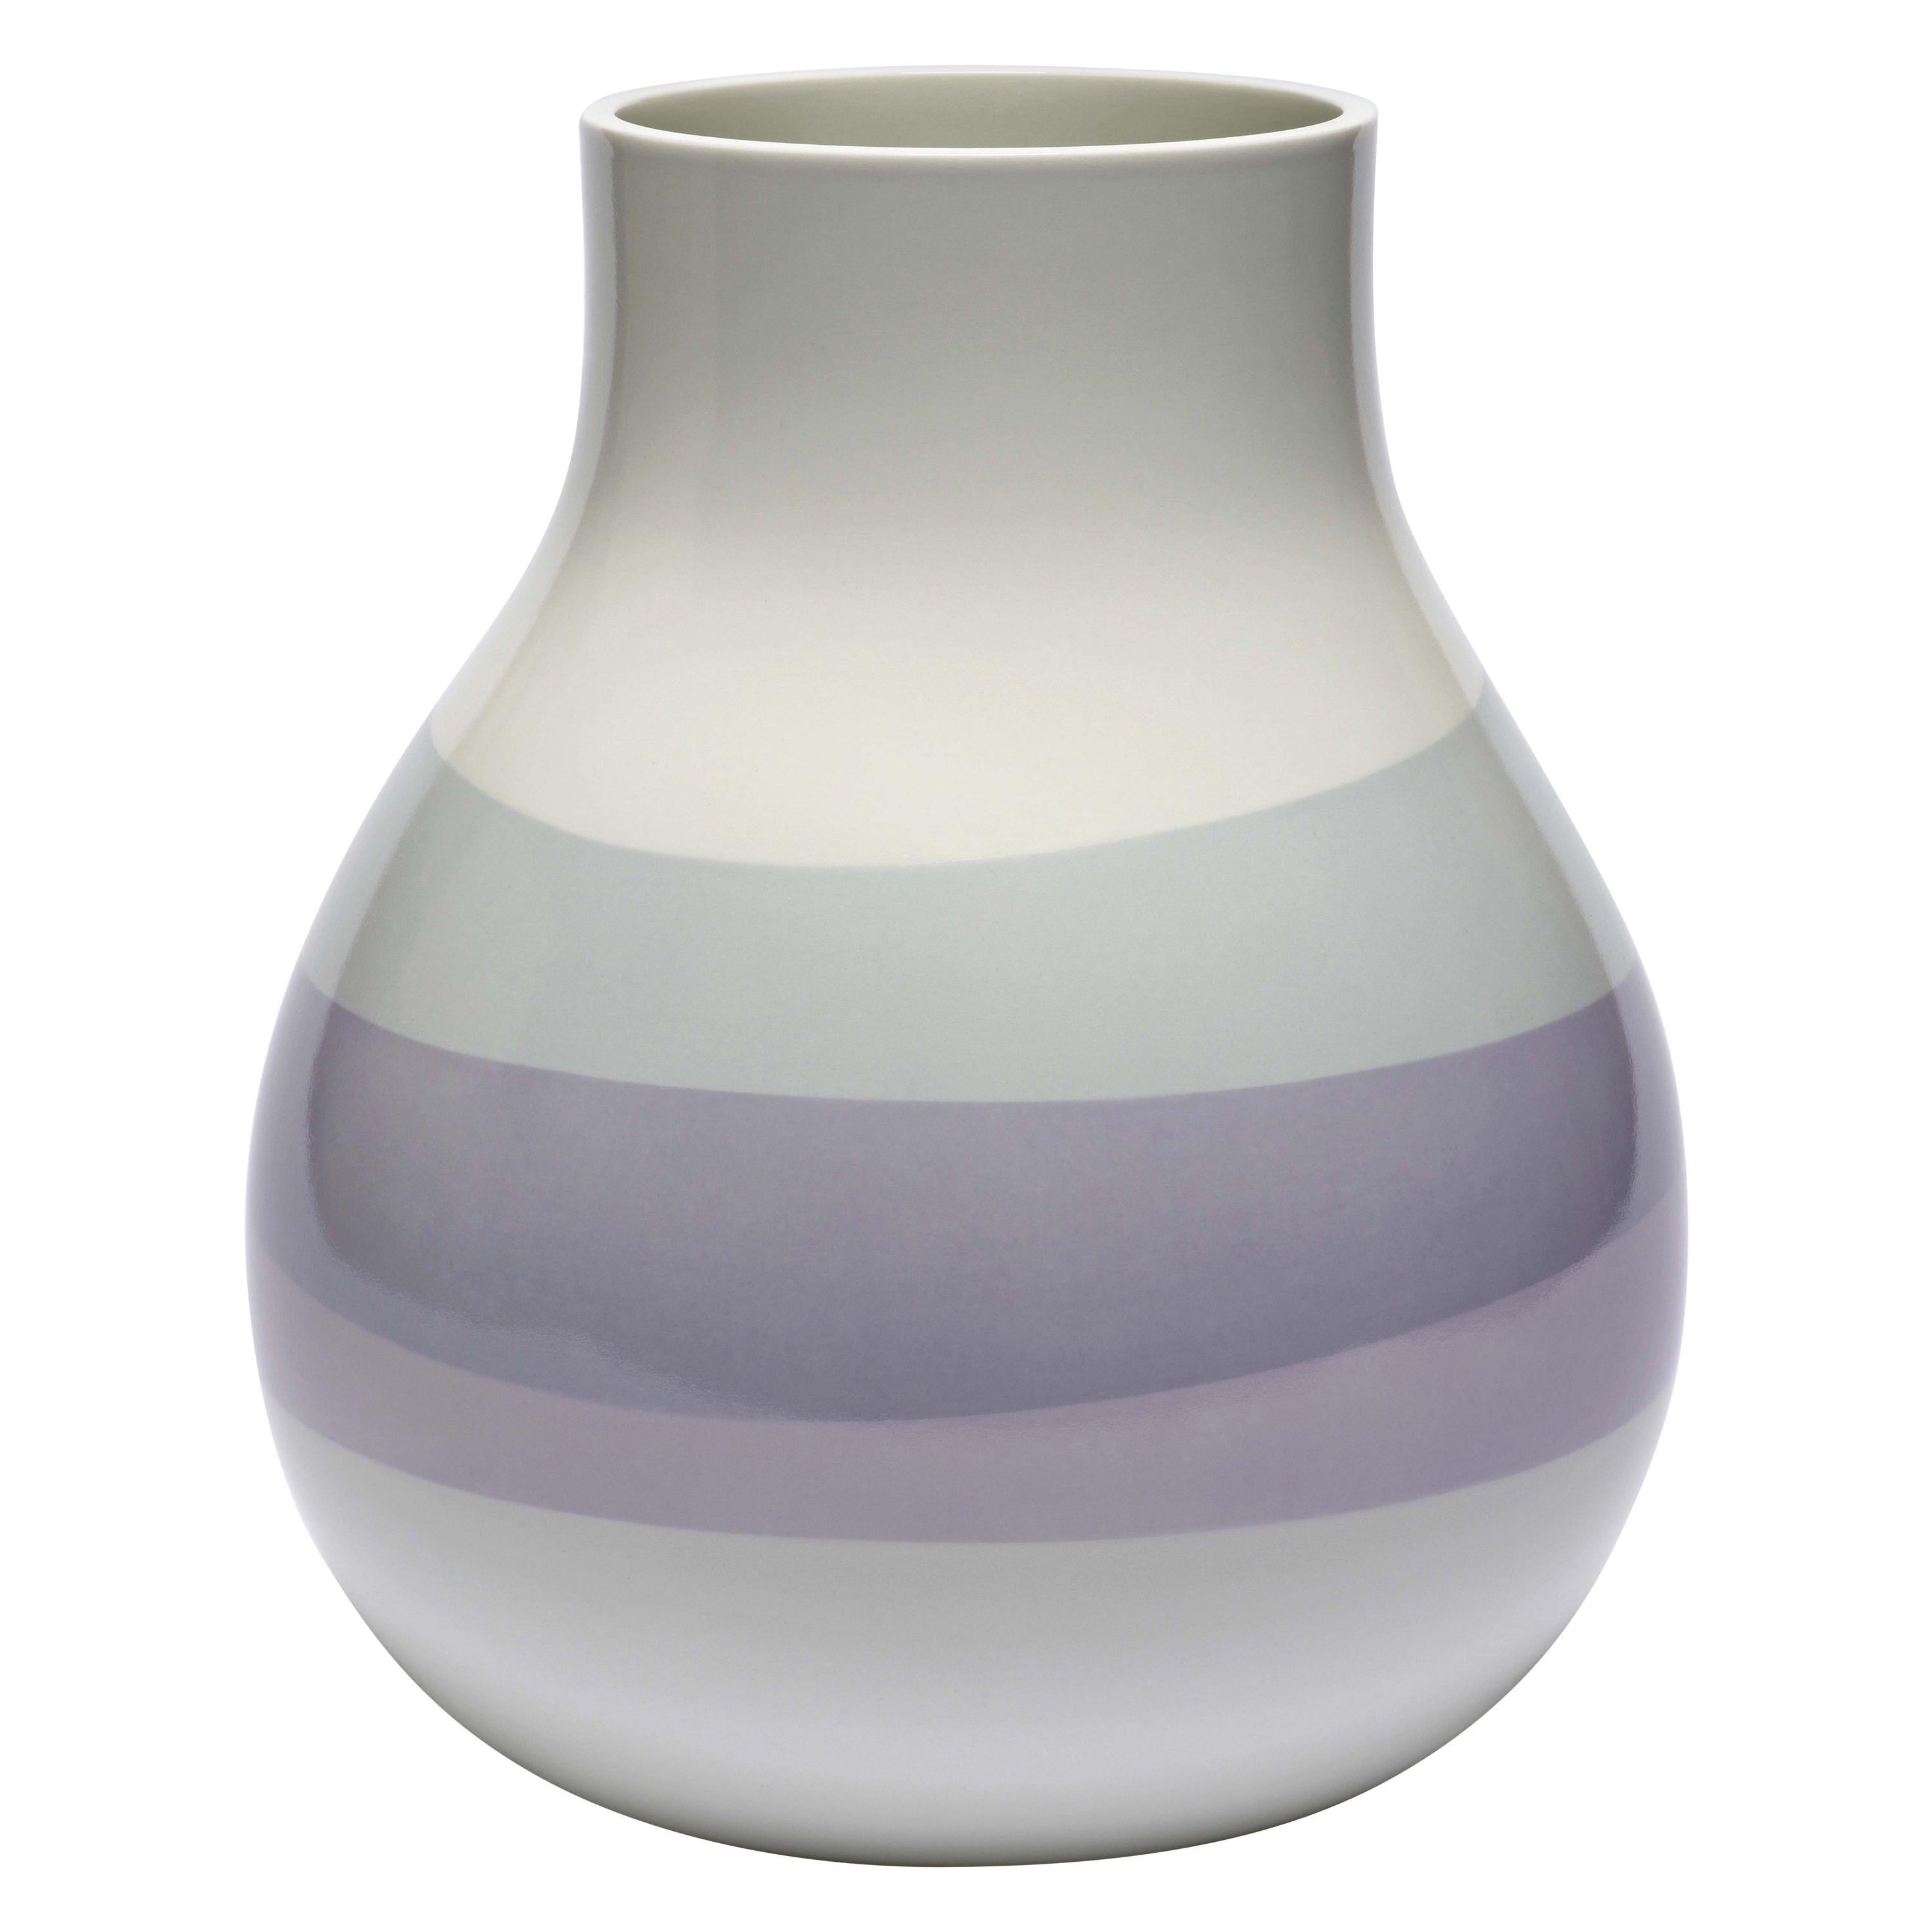 Scholten & Baijings 3.5 Vase in Porcelain by Manufacture Nationale de Sèvres For Sale